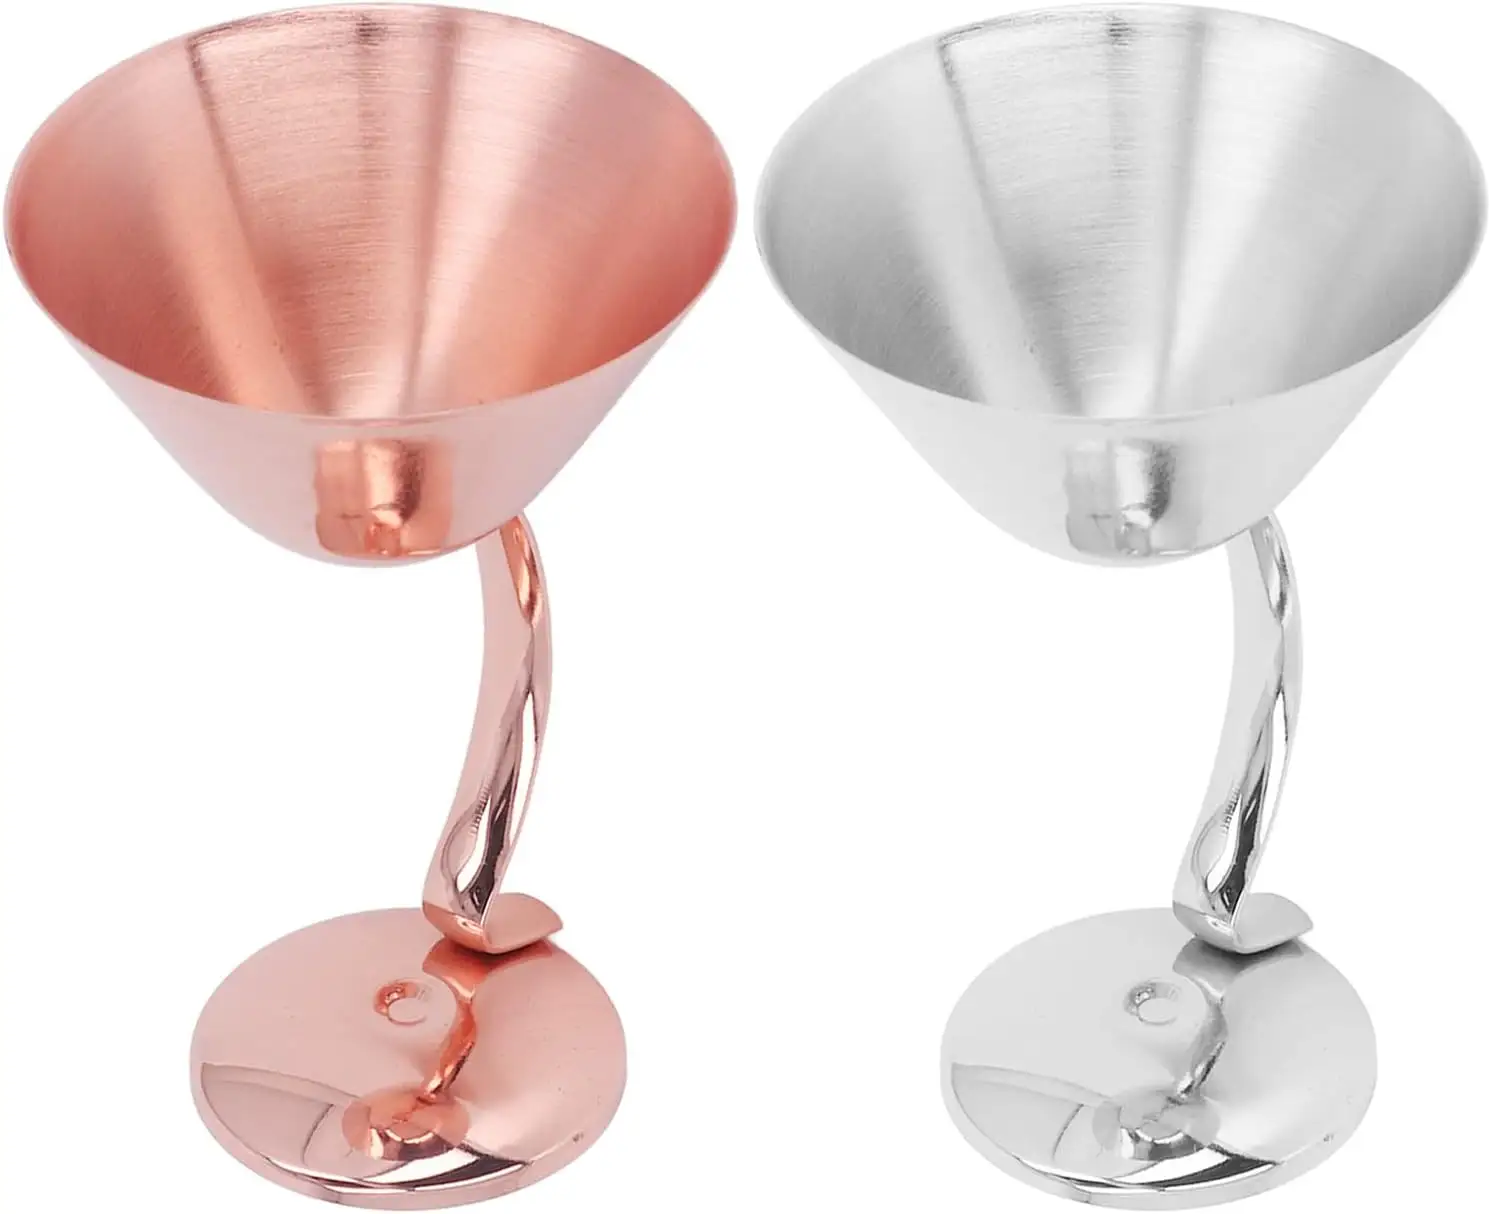 Benutzer definierte Metall Kupfer Wein kelch Multi Farben Trinkgläser Getränke Ware für Party Hochzeit für kunden spezifische Größe und heißen Verkauf